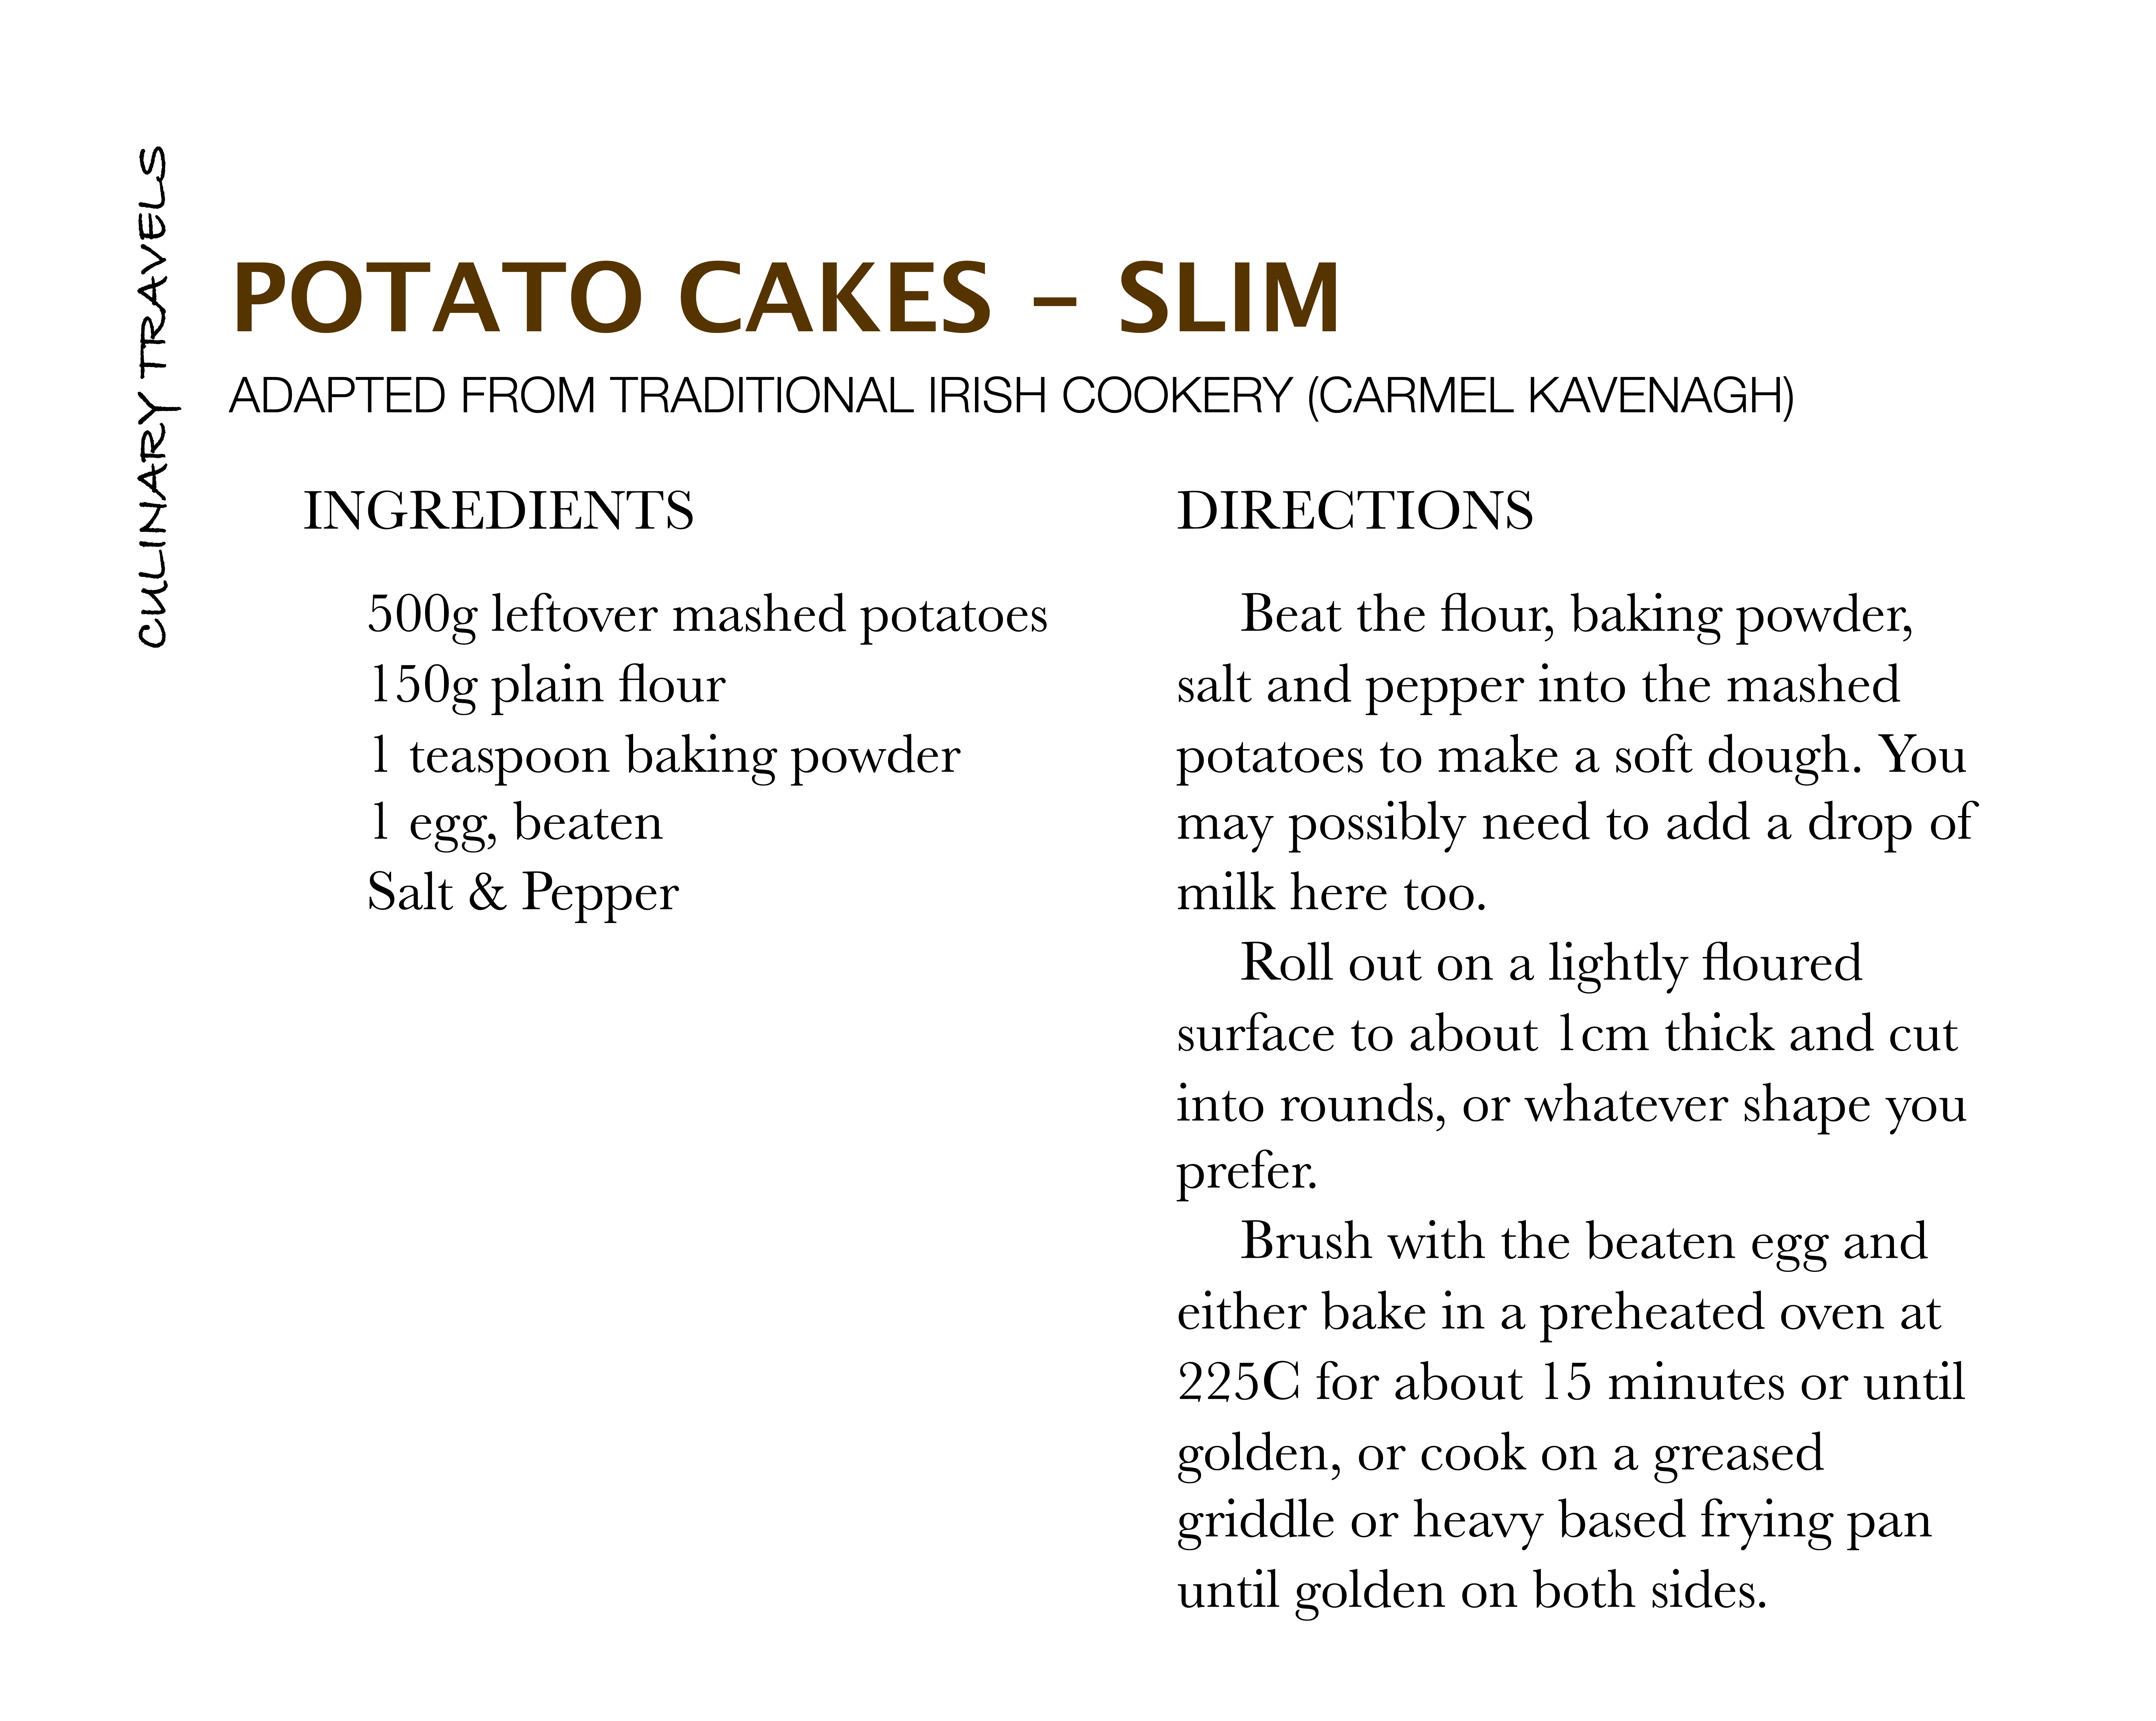 Irish Potato Cakes & Clonakilty Puddings | Blog